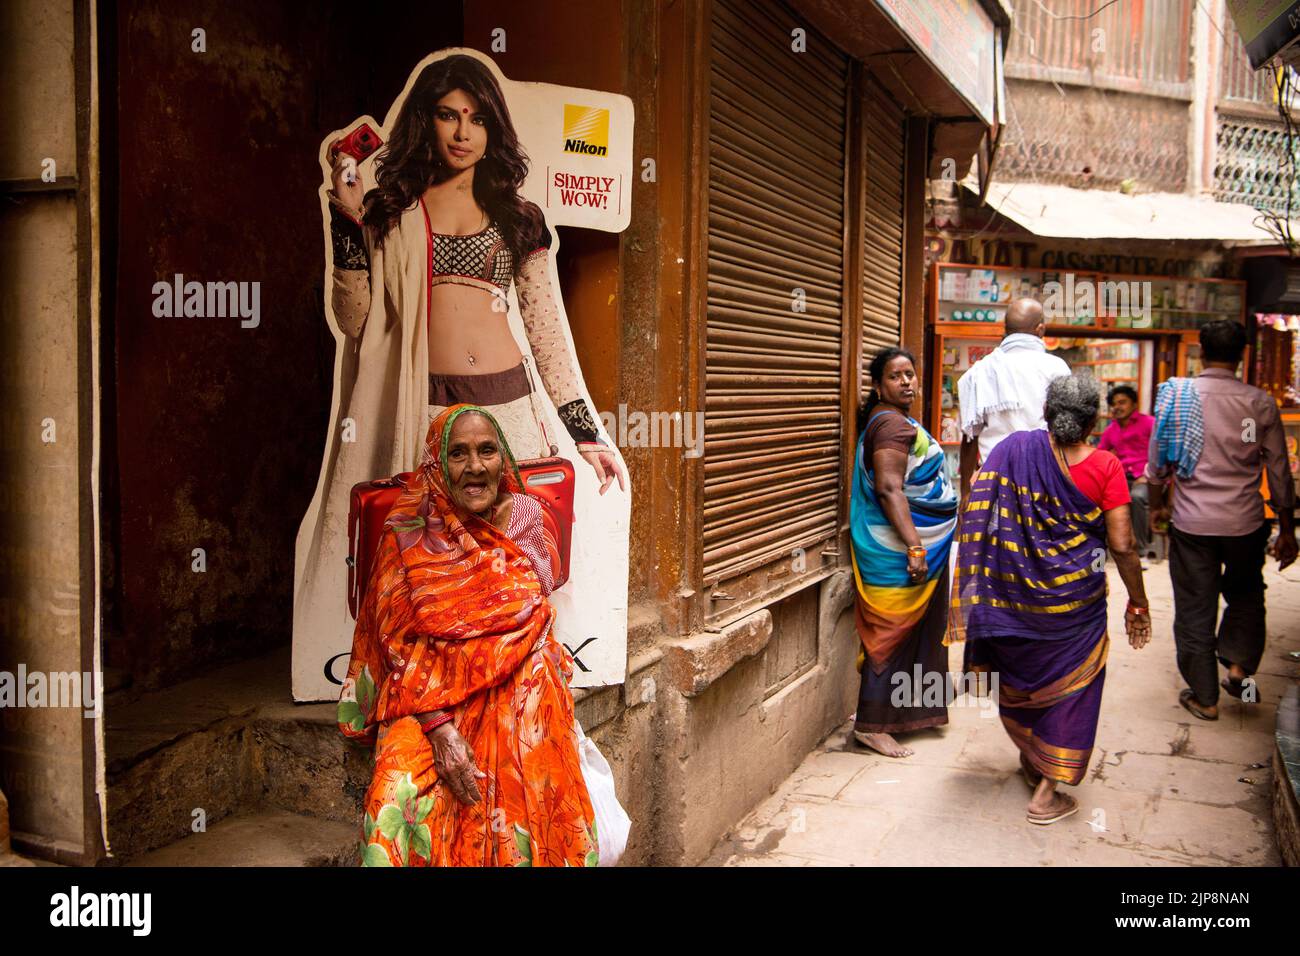 Vieille femme indienne portant une saree assise sous Nikon affiche du modèle de bikini dans les ruelles étroites de Varanasi, Banaras, Benaras, Kashi, Uttar Pradesh, Inde Banque D'Images